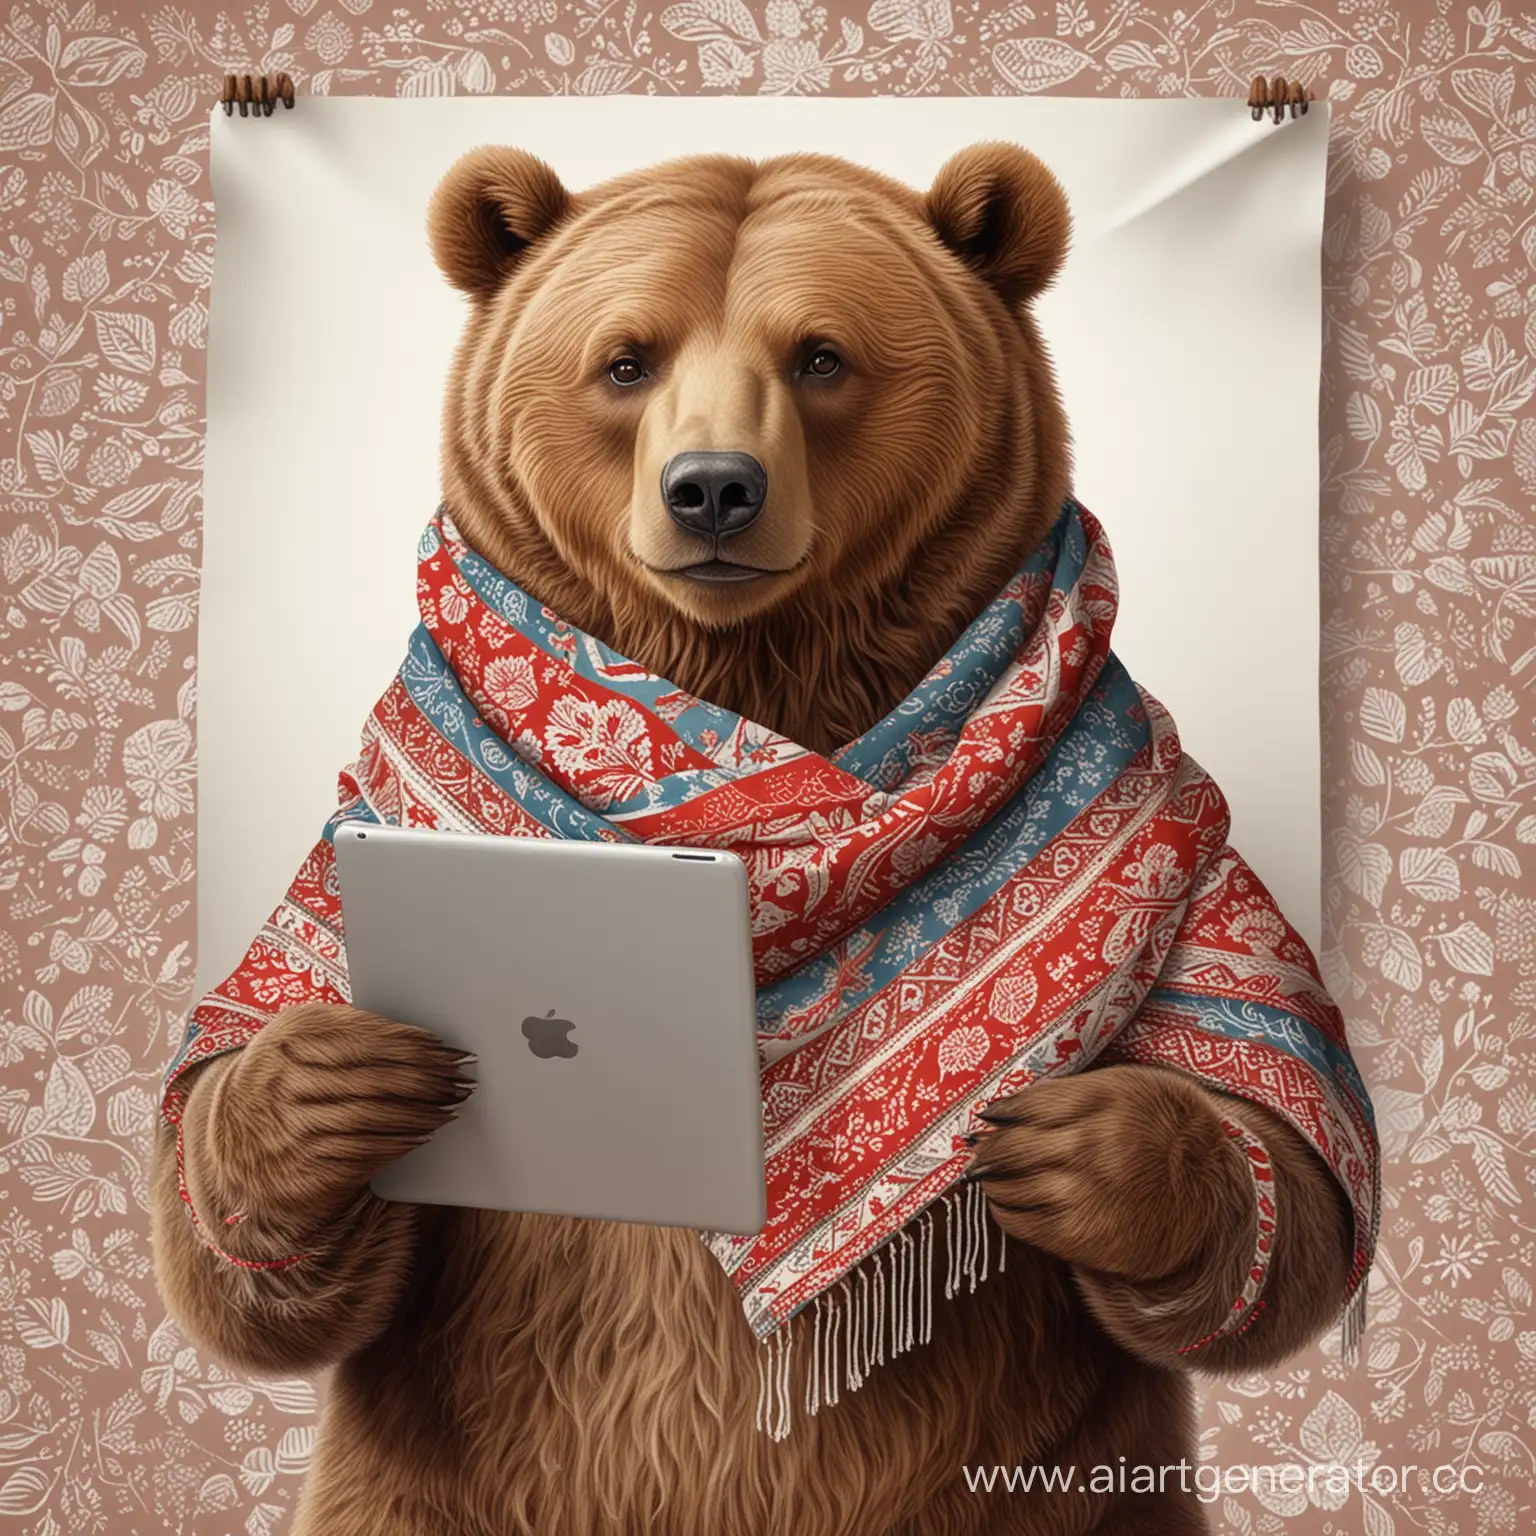 бурый медведь в русском платке с узорами рисует на планшете